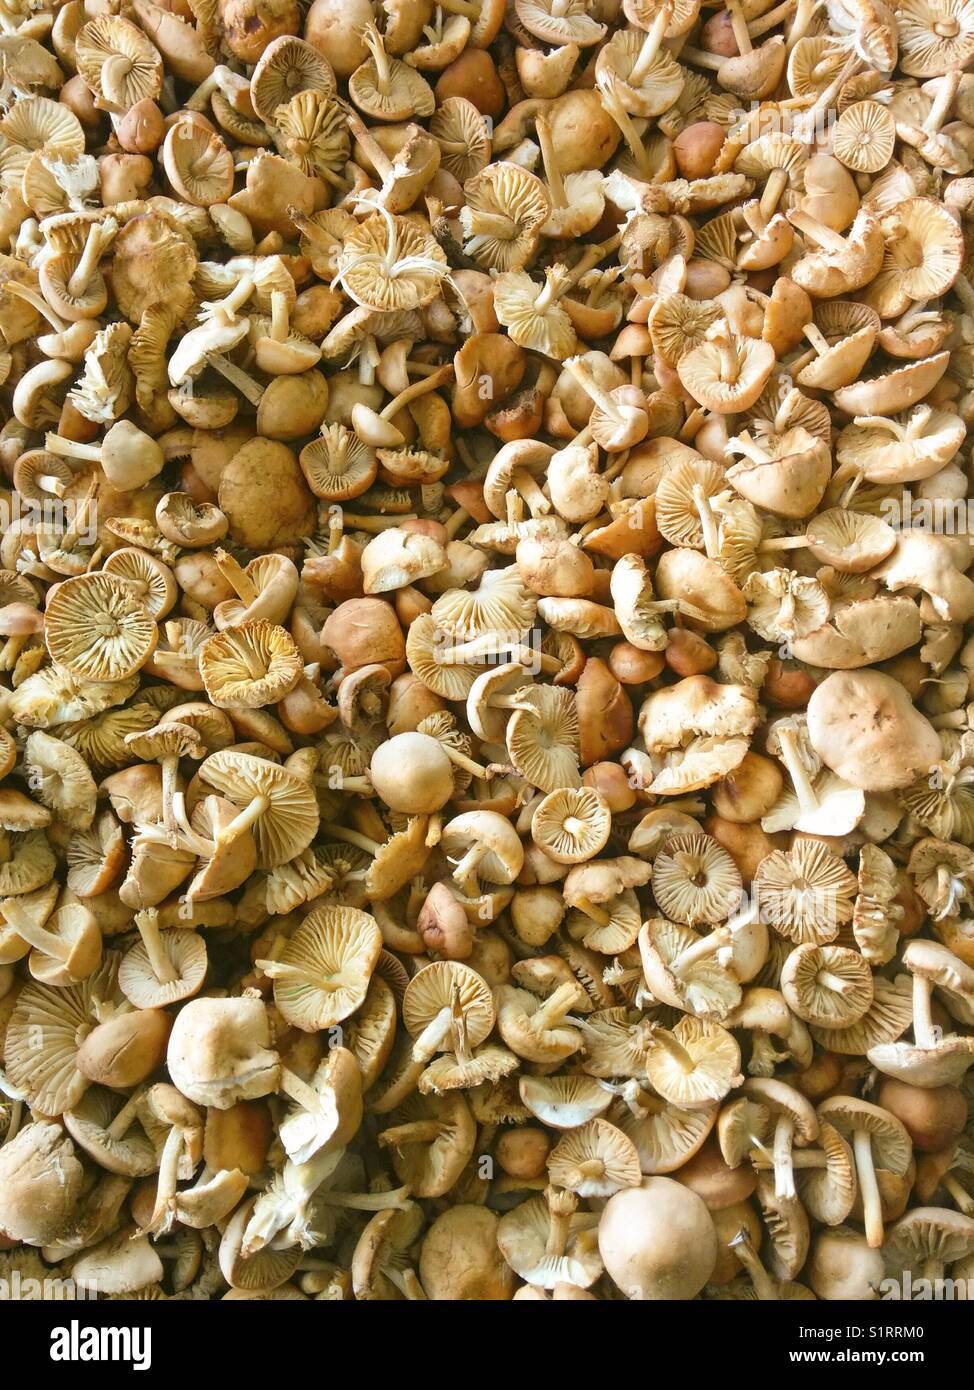 Mushrooms for sale. Marasmius oreades. Fairy ring mushrooms. Stock Photo